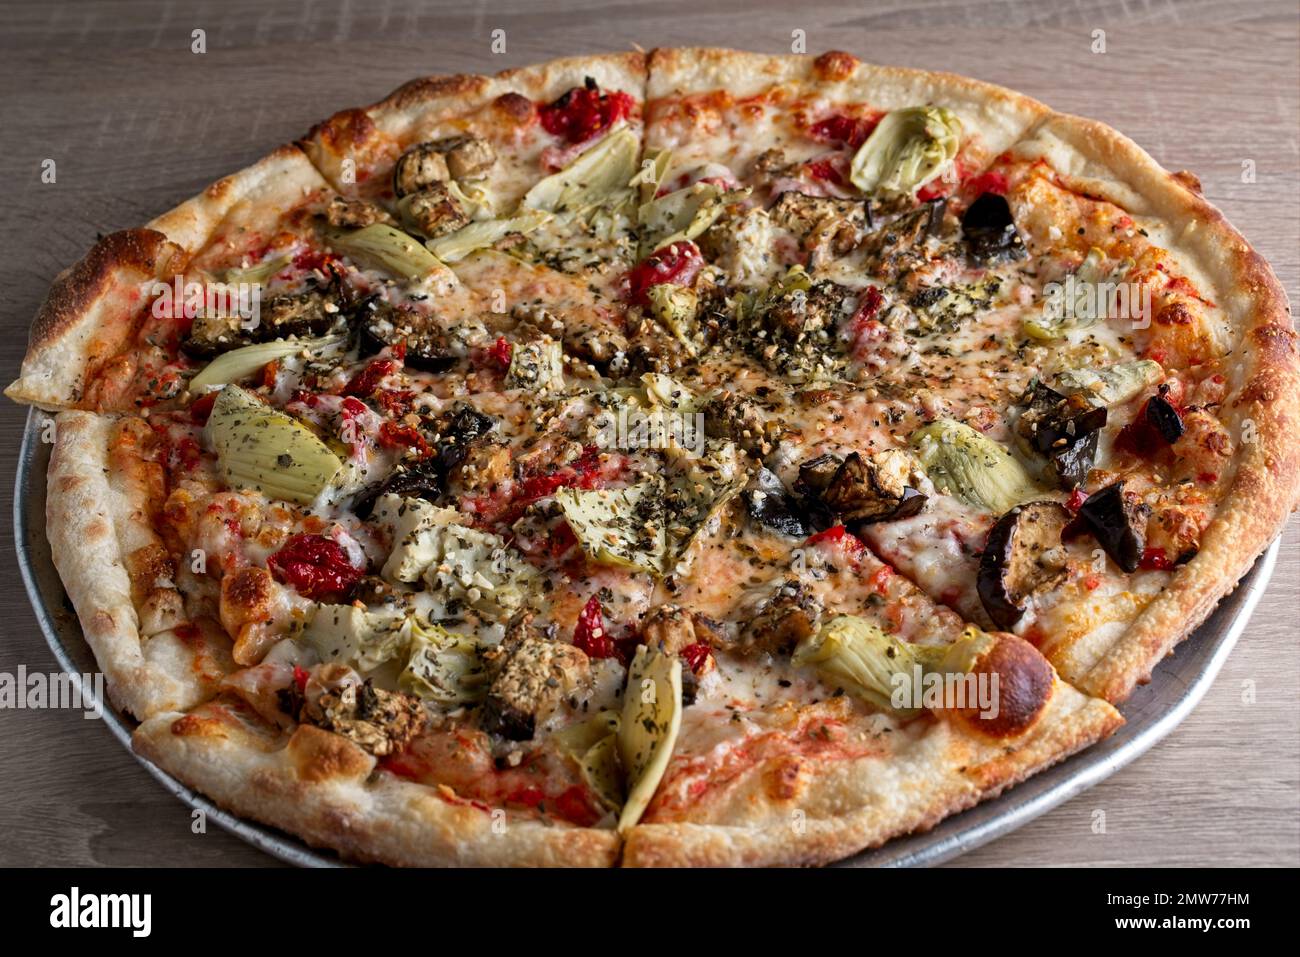 Pizza gastronomique avec artichaut, tomate séchée au soleil, aubergine, sauce tomate, sur croûte mince Banque D'Images